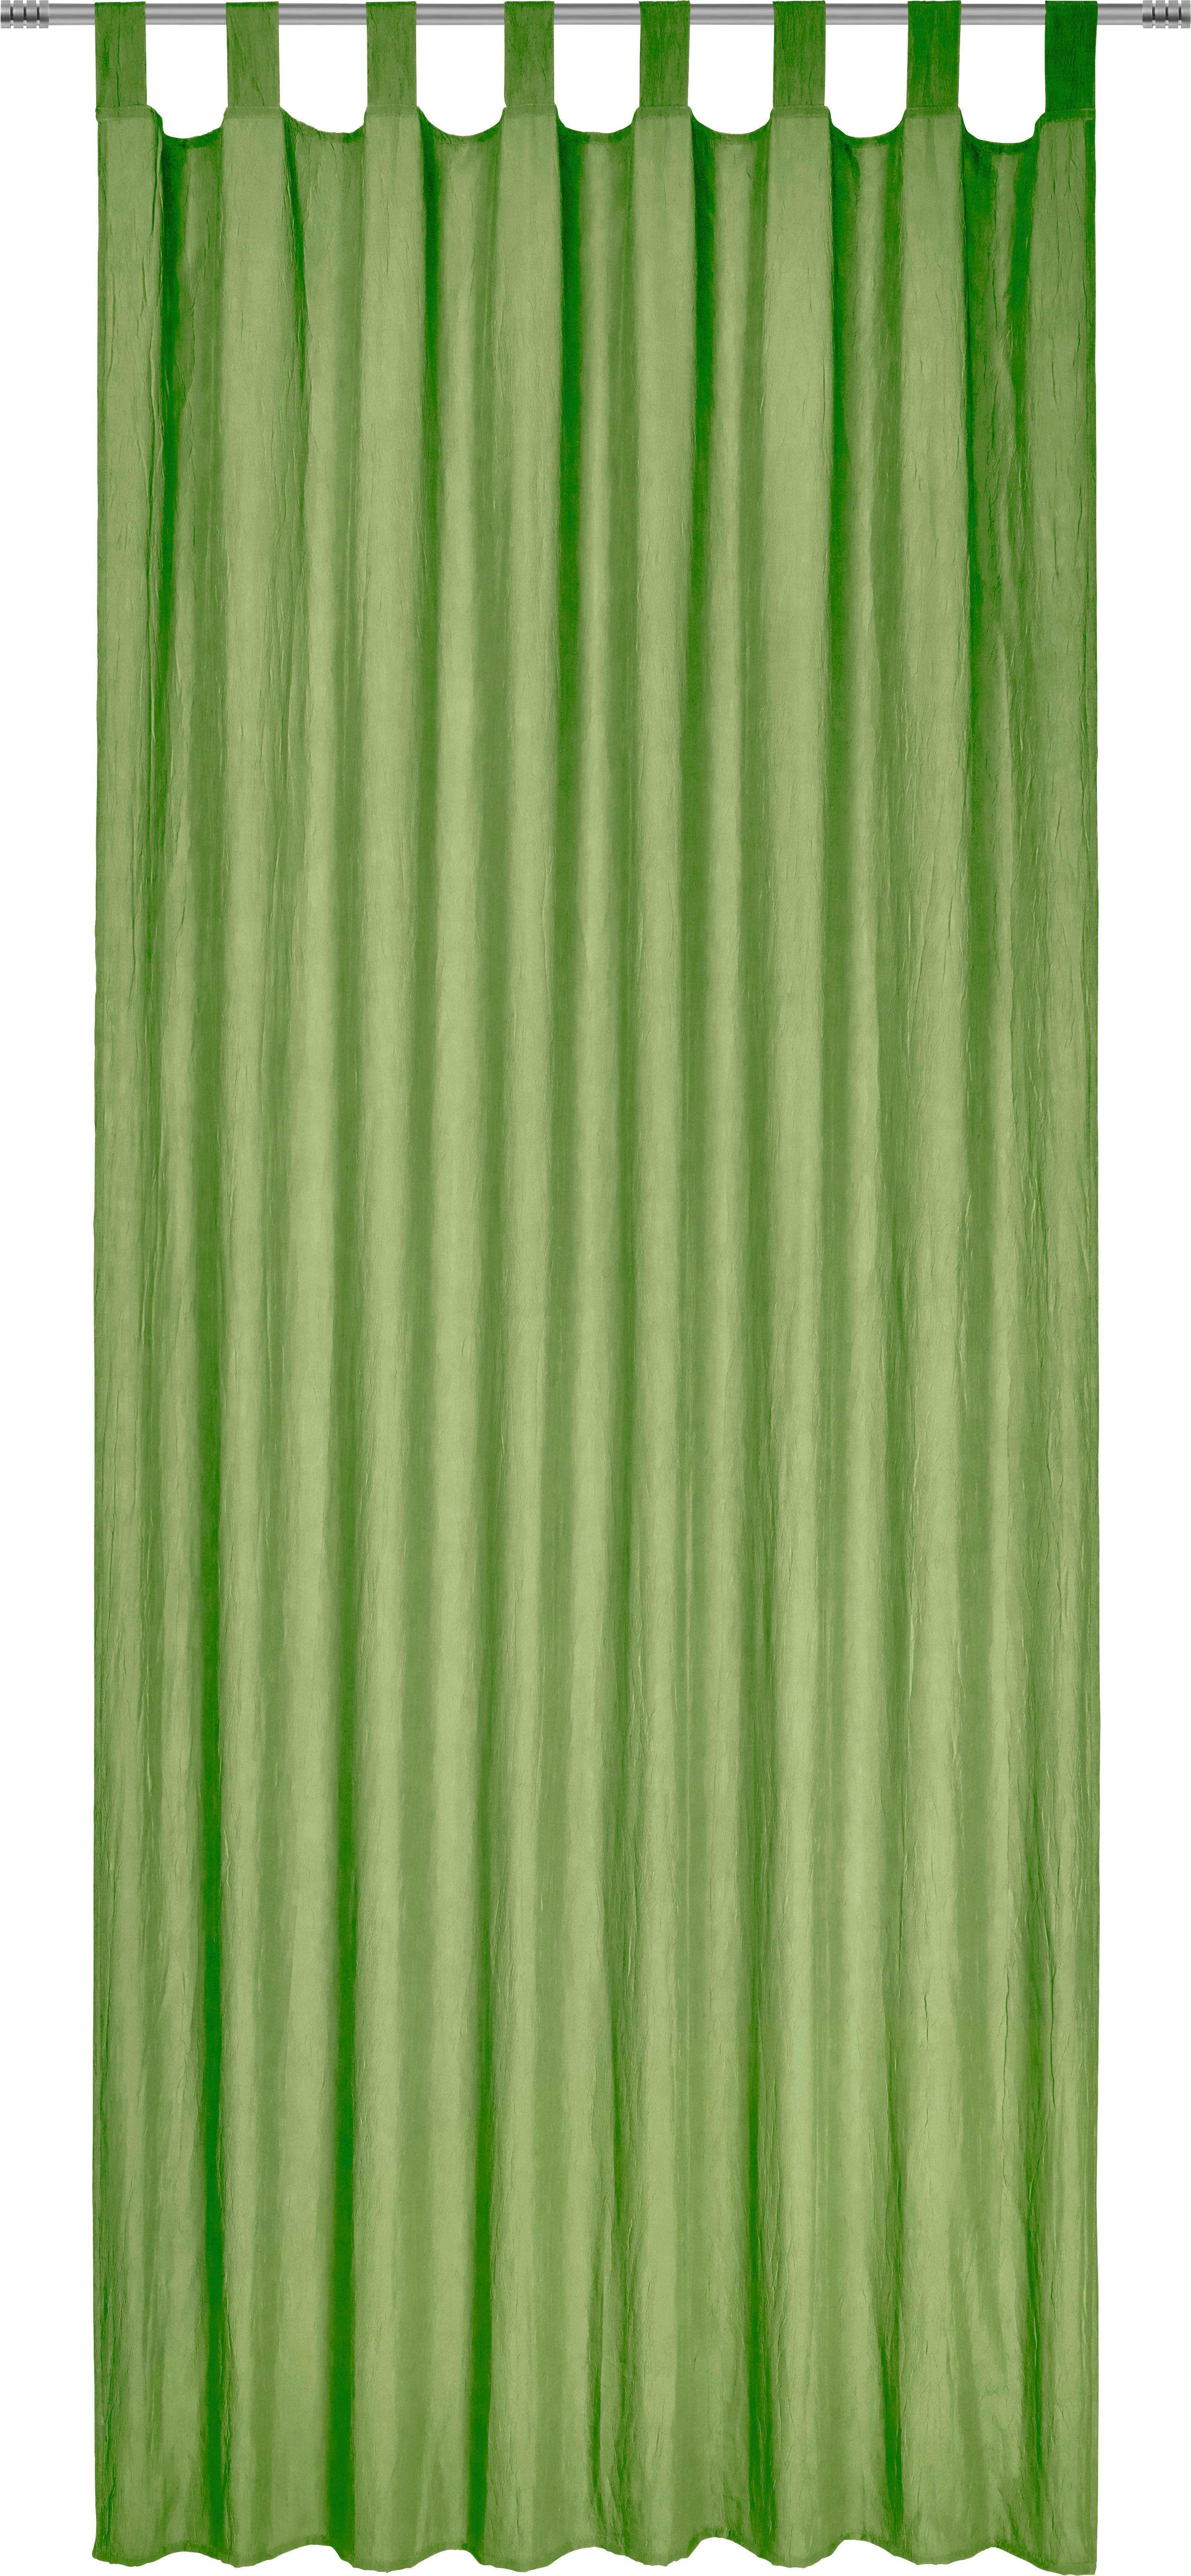 ZAVESA Z ZANKAMI POLO, ZELENA  pol prosojno  135/245 cm   - zelena, Konvencionalno, tekstil (135/245cm) - Boxxx